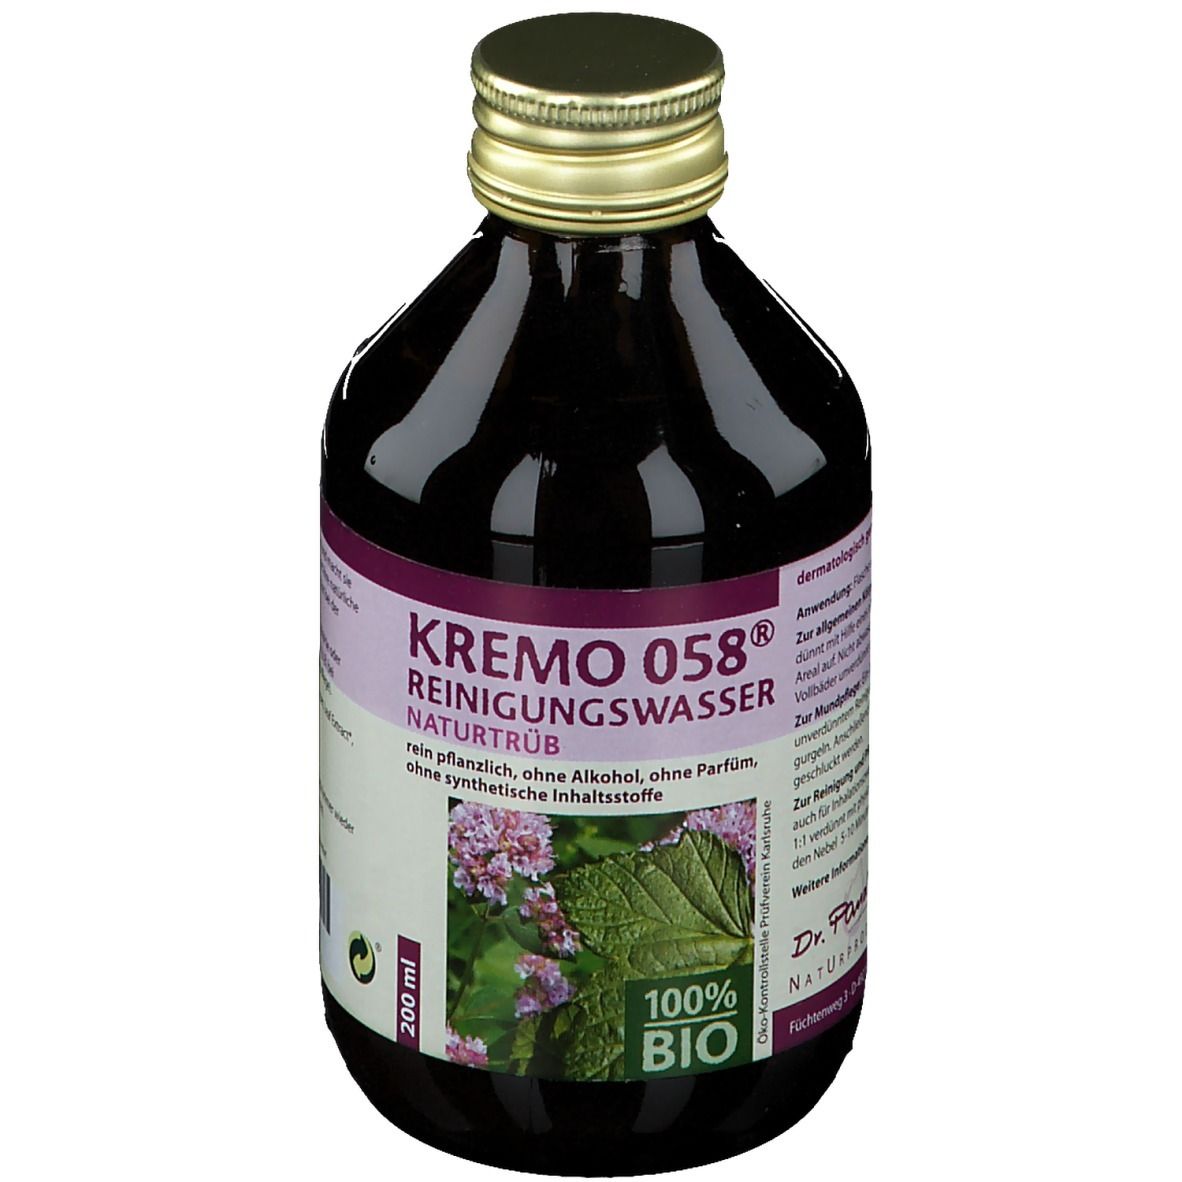 Dr. Pandalis Kremo 058® organic cleaning water